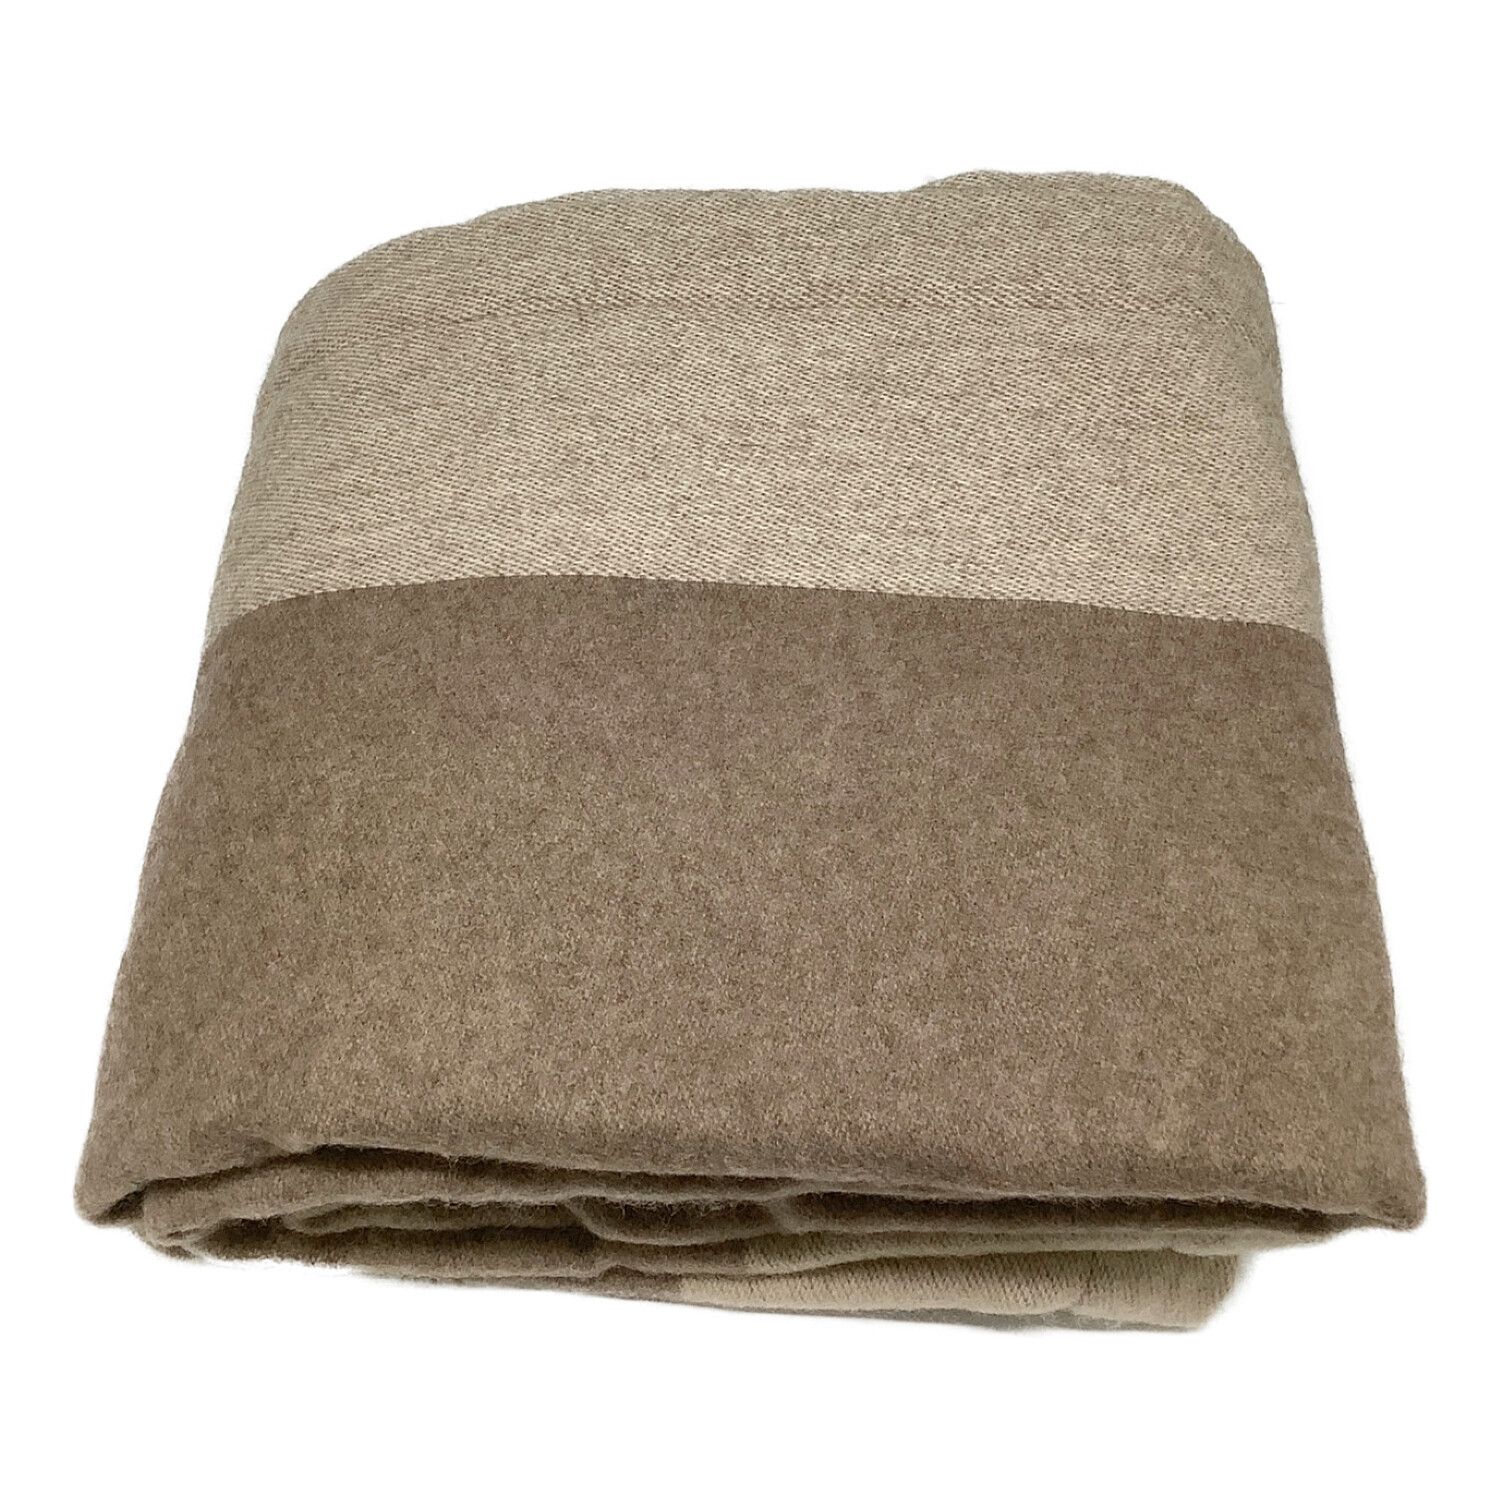 無印良品 (ムジルシリョウヒン) 毛布 ダブル(幅180×長さ200㎝) モカブラウン カシミヤ混